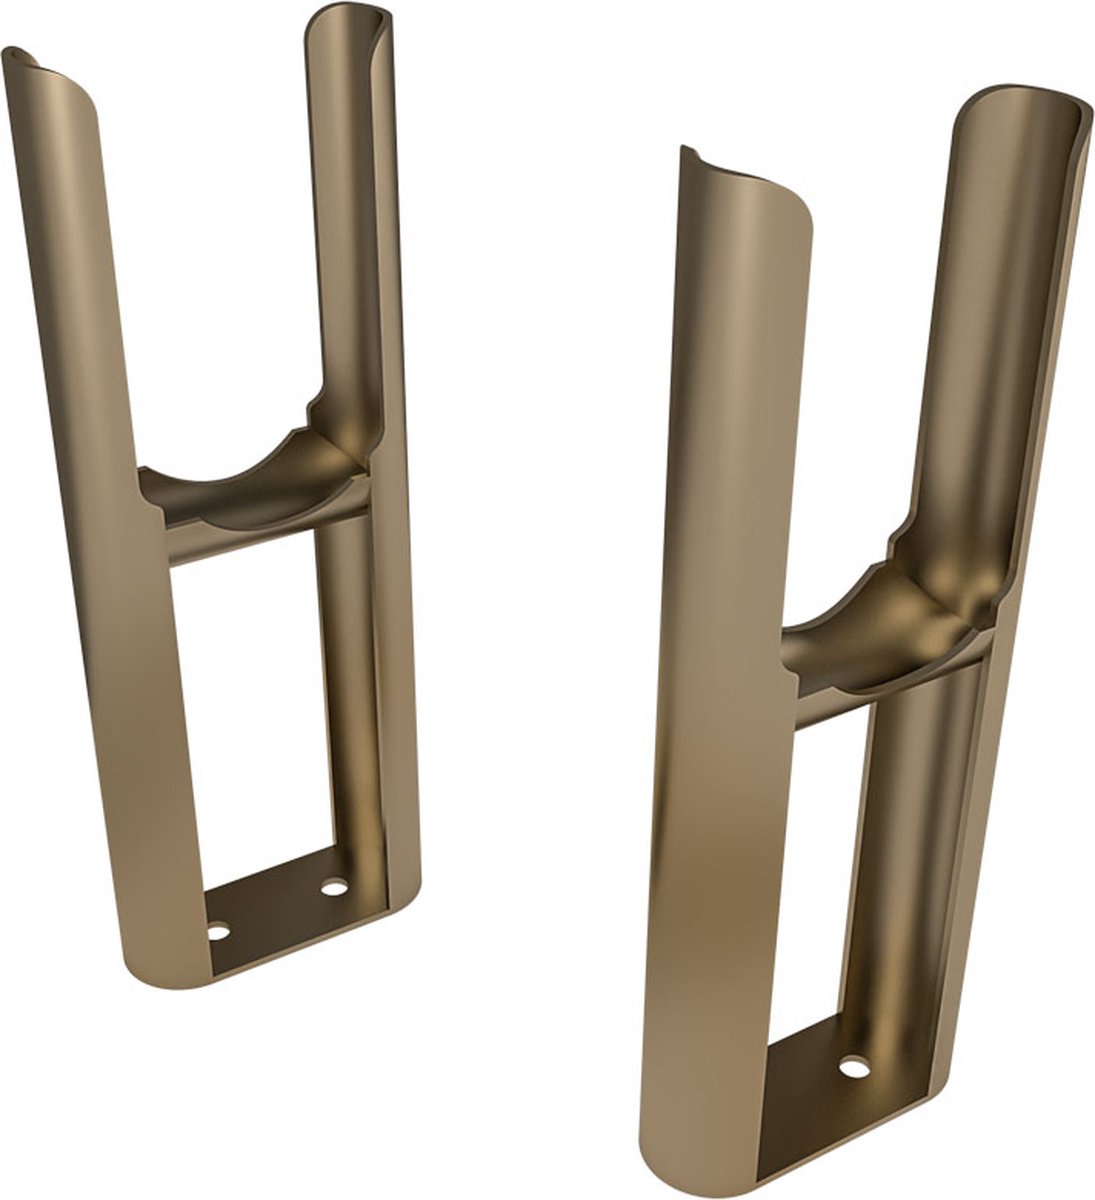 Eastbrook radiatorvoeten (paar) voor de Rivassa 2 kolom bronze effect